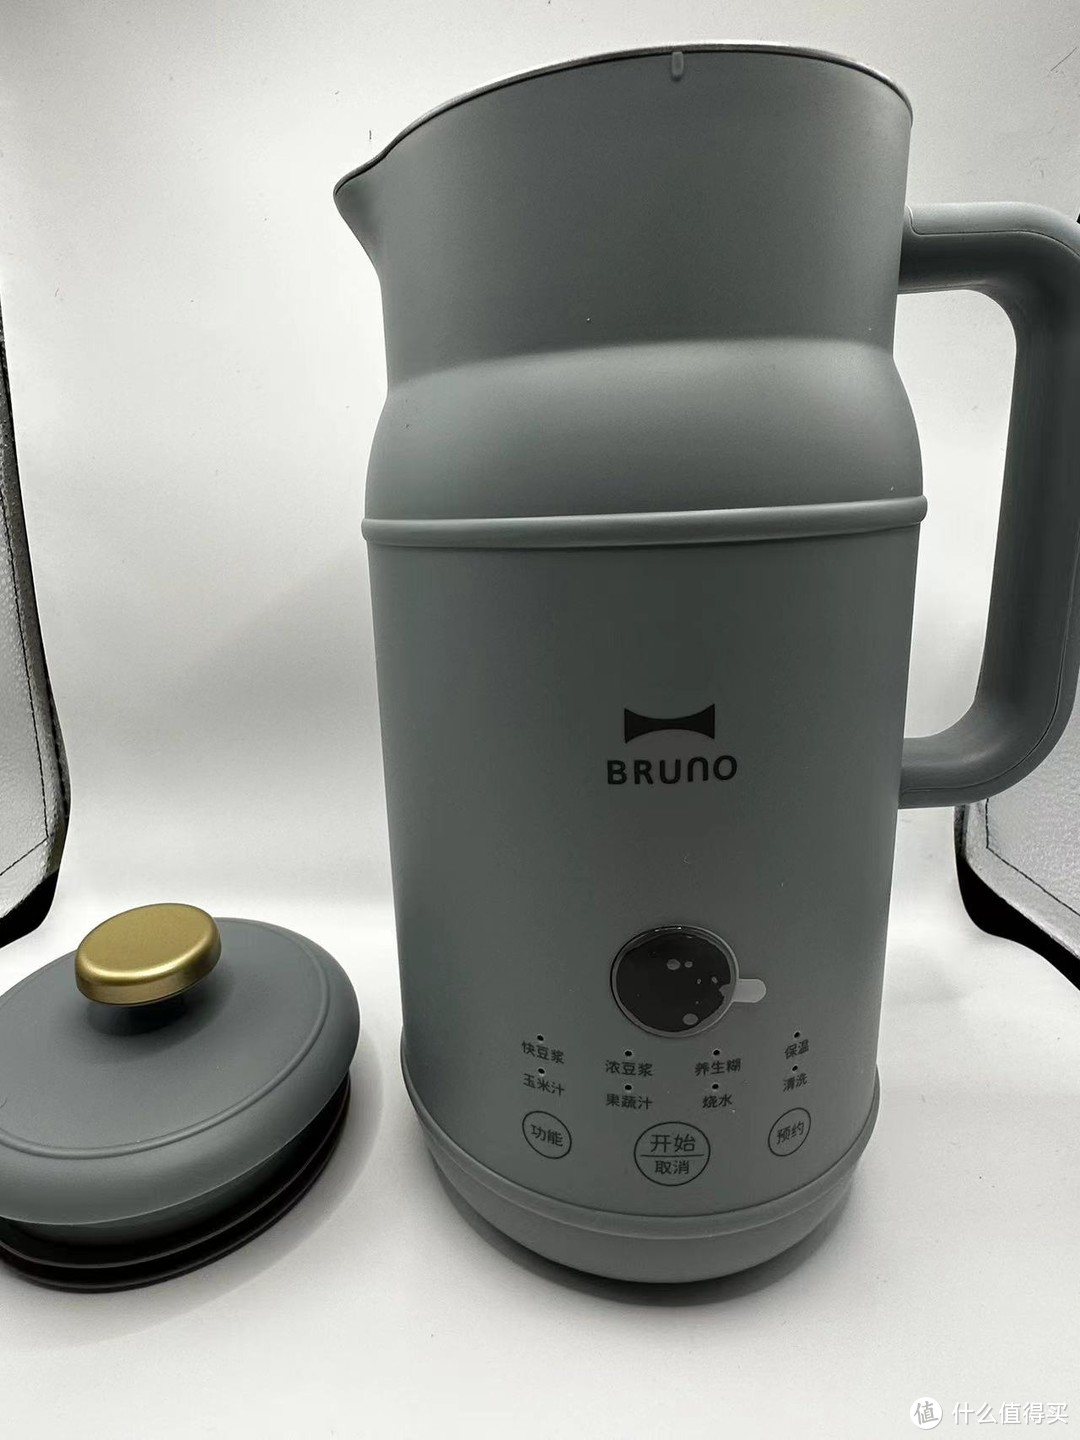 太棒了!BRUNO 小奶壶豆浆机，轻松制作香浓豆浆，让你的生活更加美好!